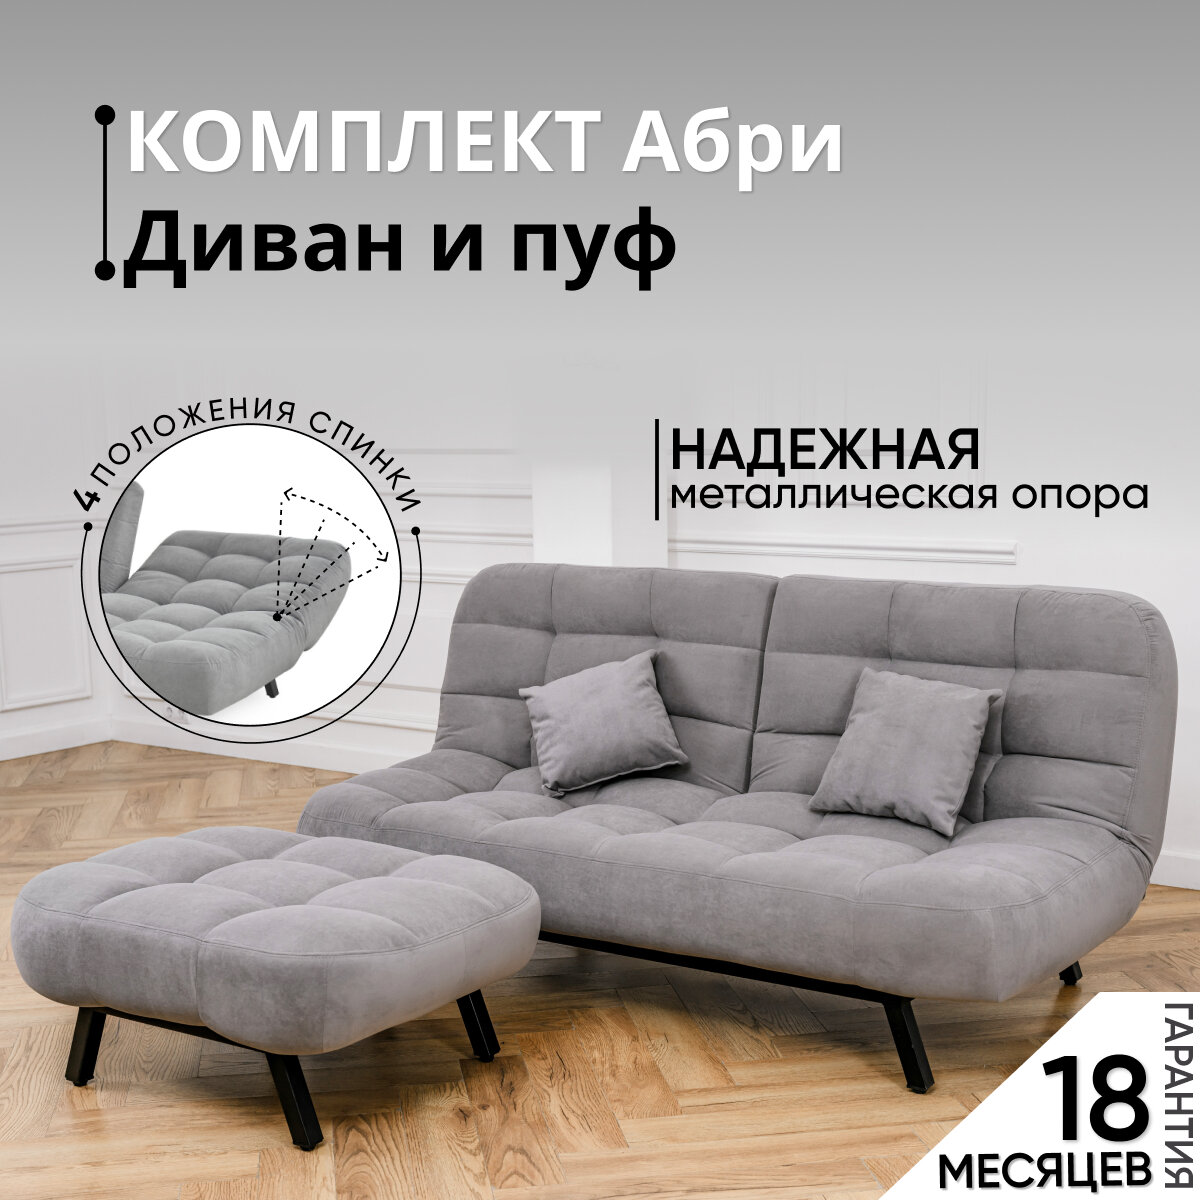 Комплект мягкой мебели Диван и Пуф 301 механизм клик-кляк, материал износостойкий велюр, цвет серый